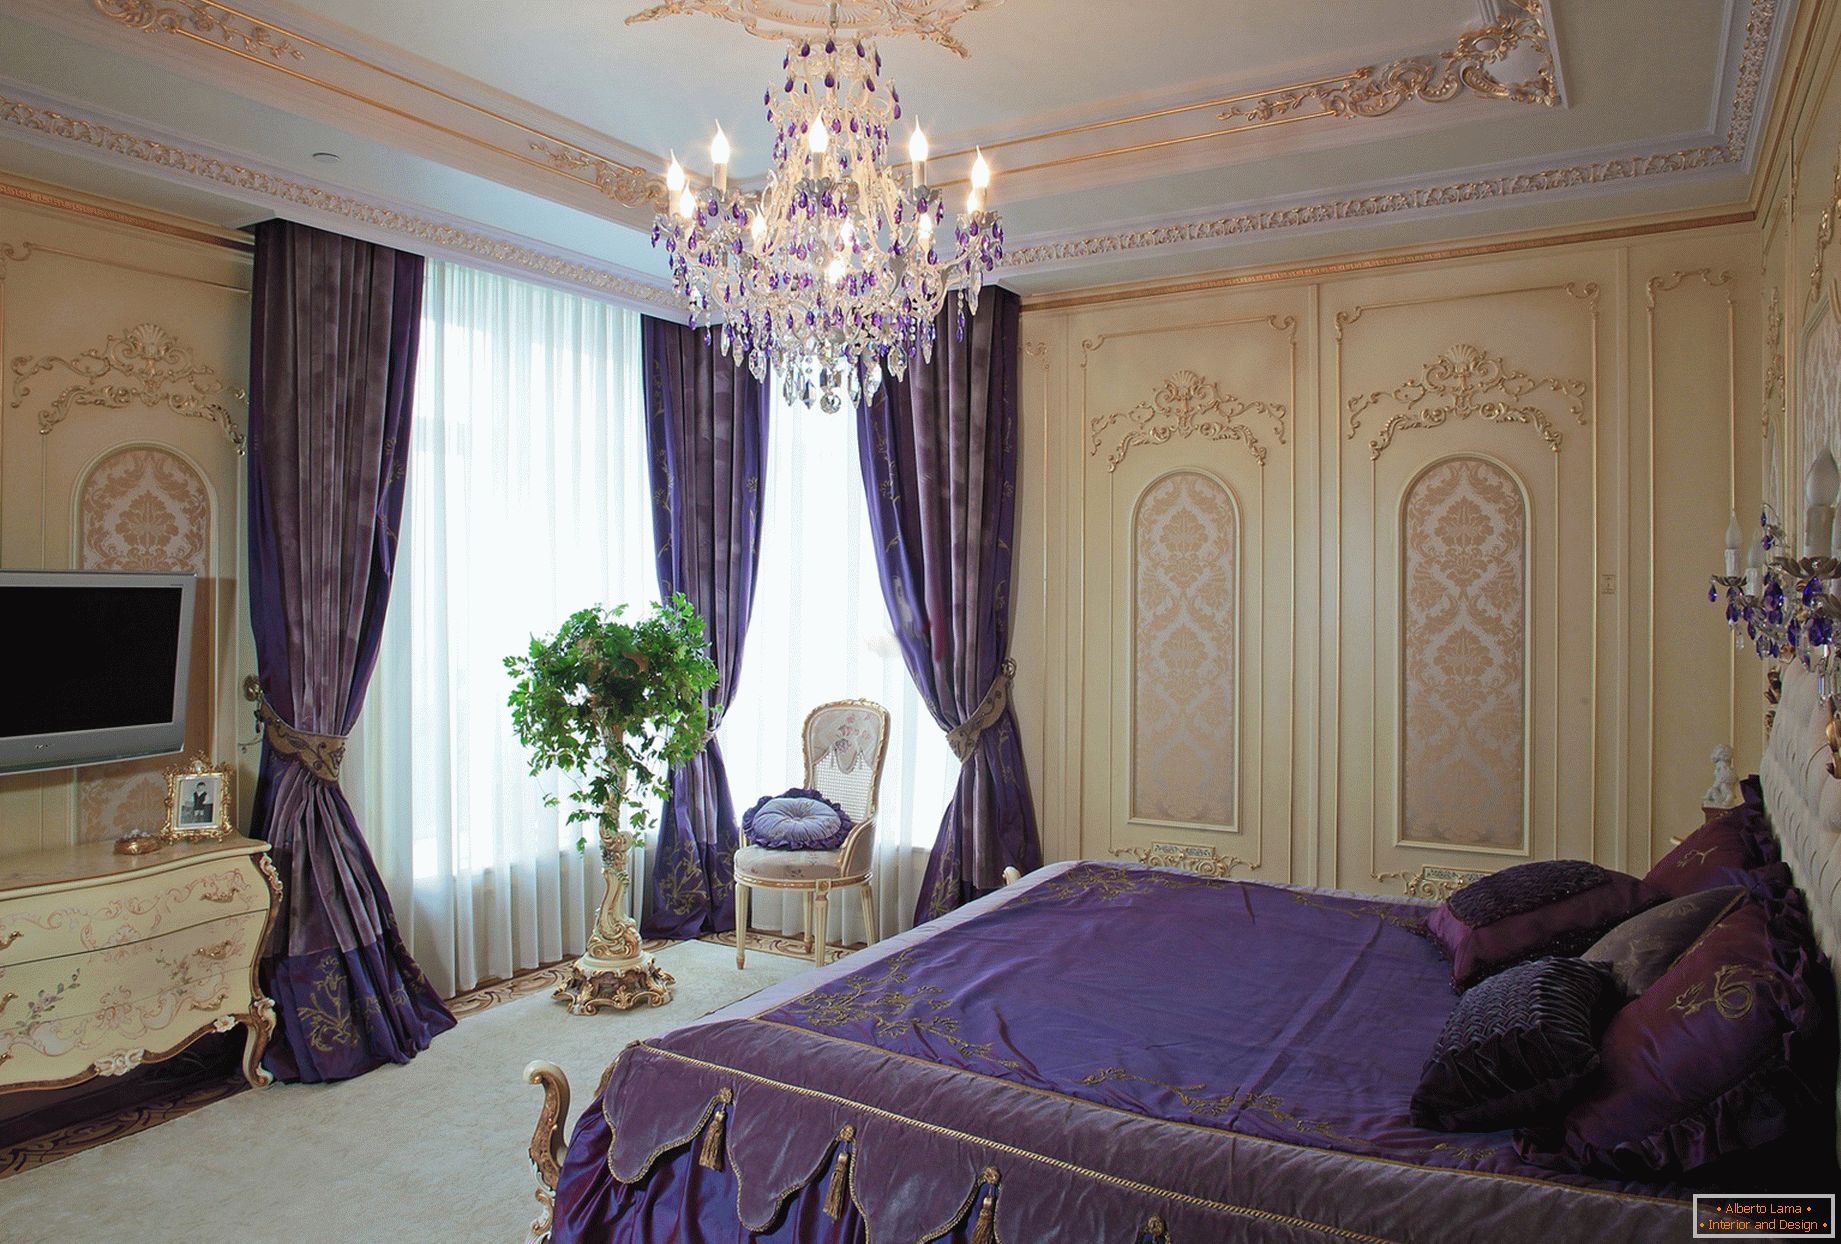 Cameră elegantă în stil baroc. Un concept subtil de design - perdele întunecate purpuriu sunt combinate cu așternuturi potrivite în ton.